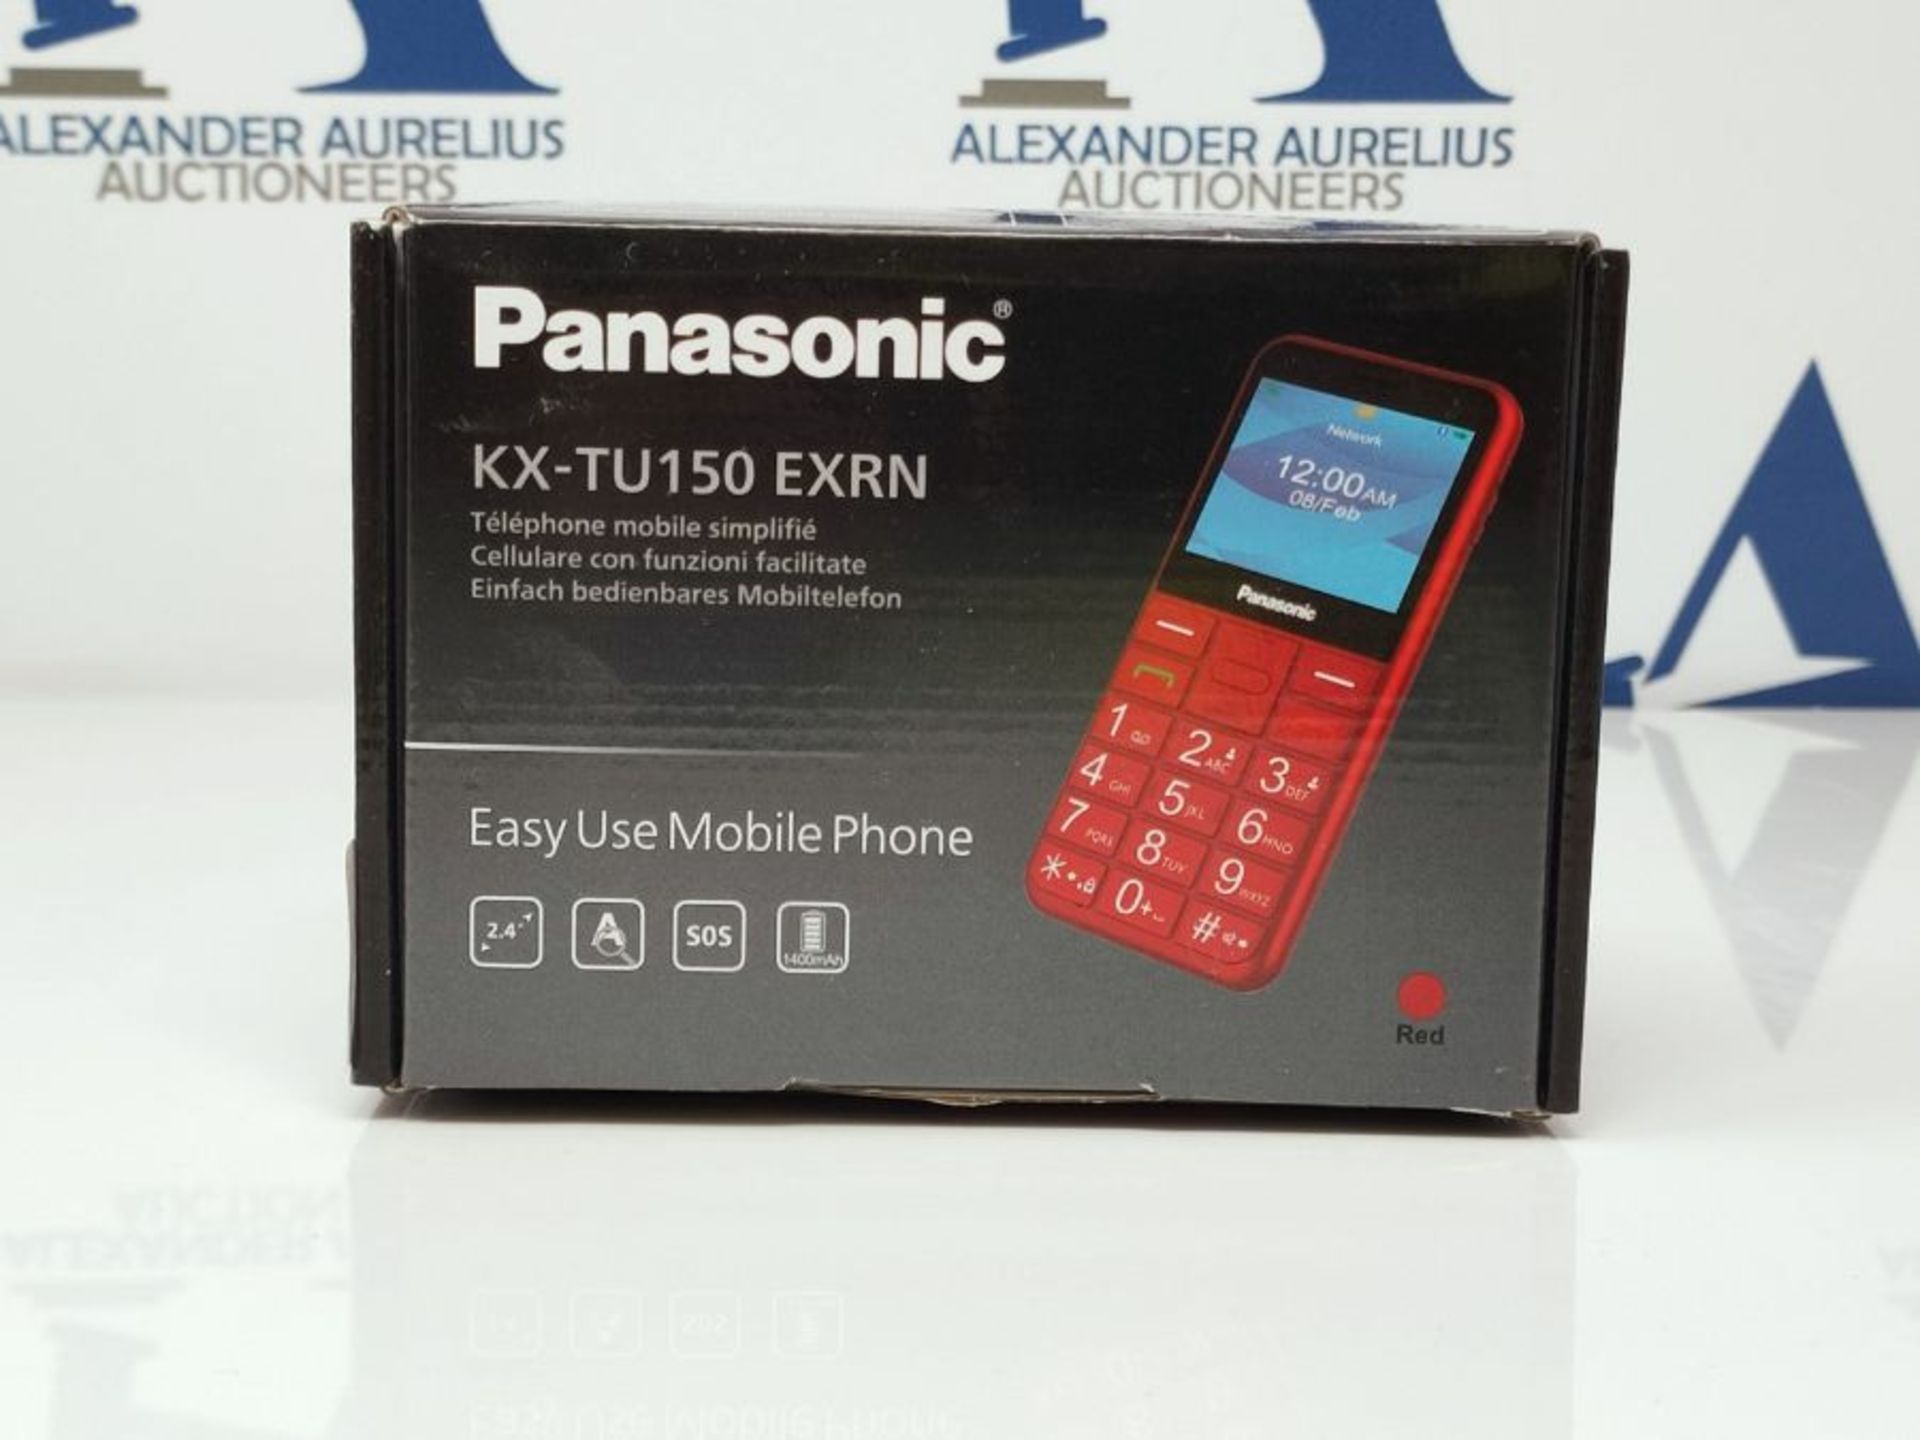 Panasonic KX-TU150 Telefono Cellulare ad Utilizzo Facilitato, Pulsanti Grandi, Ampio S - Image 2 of 3